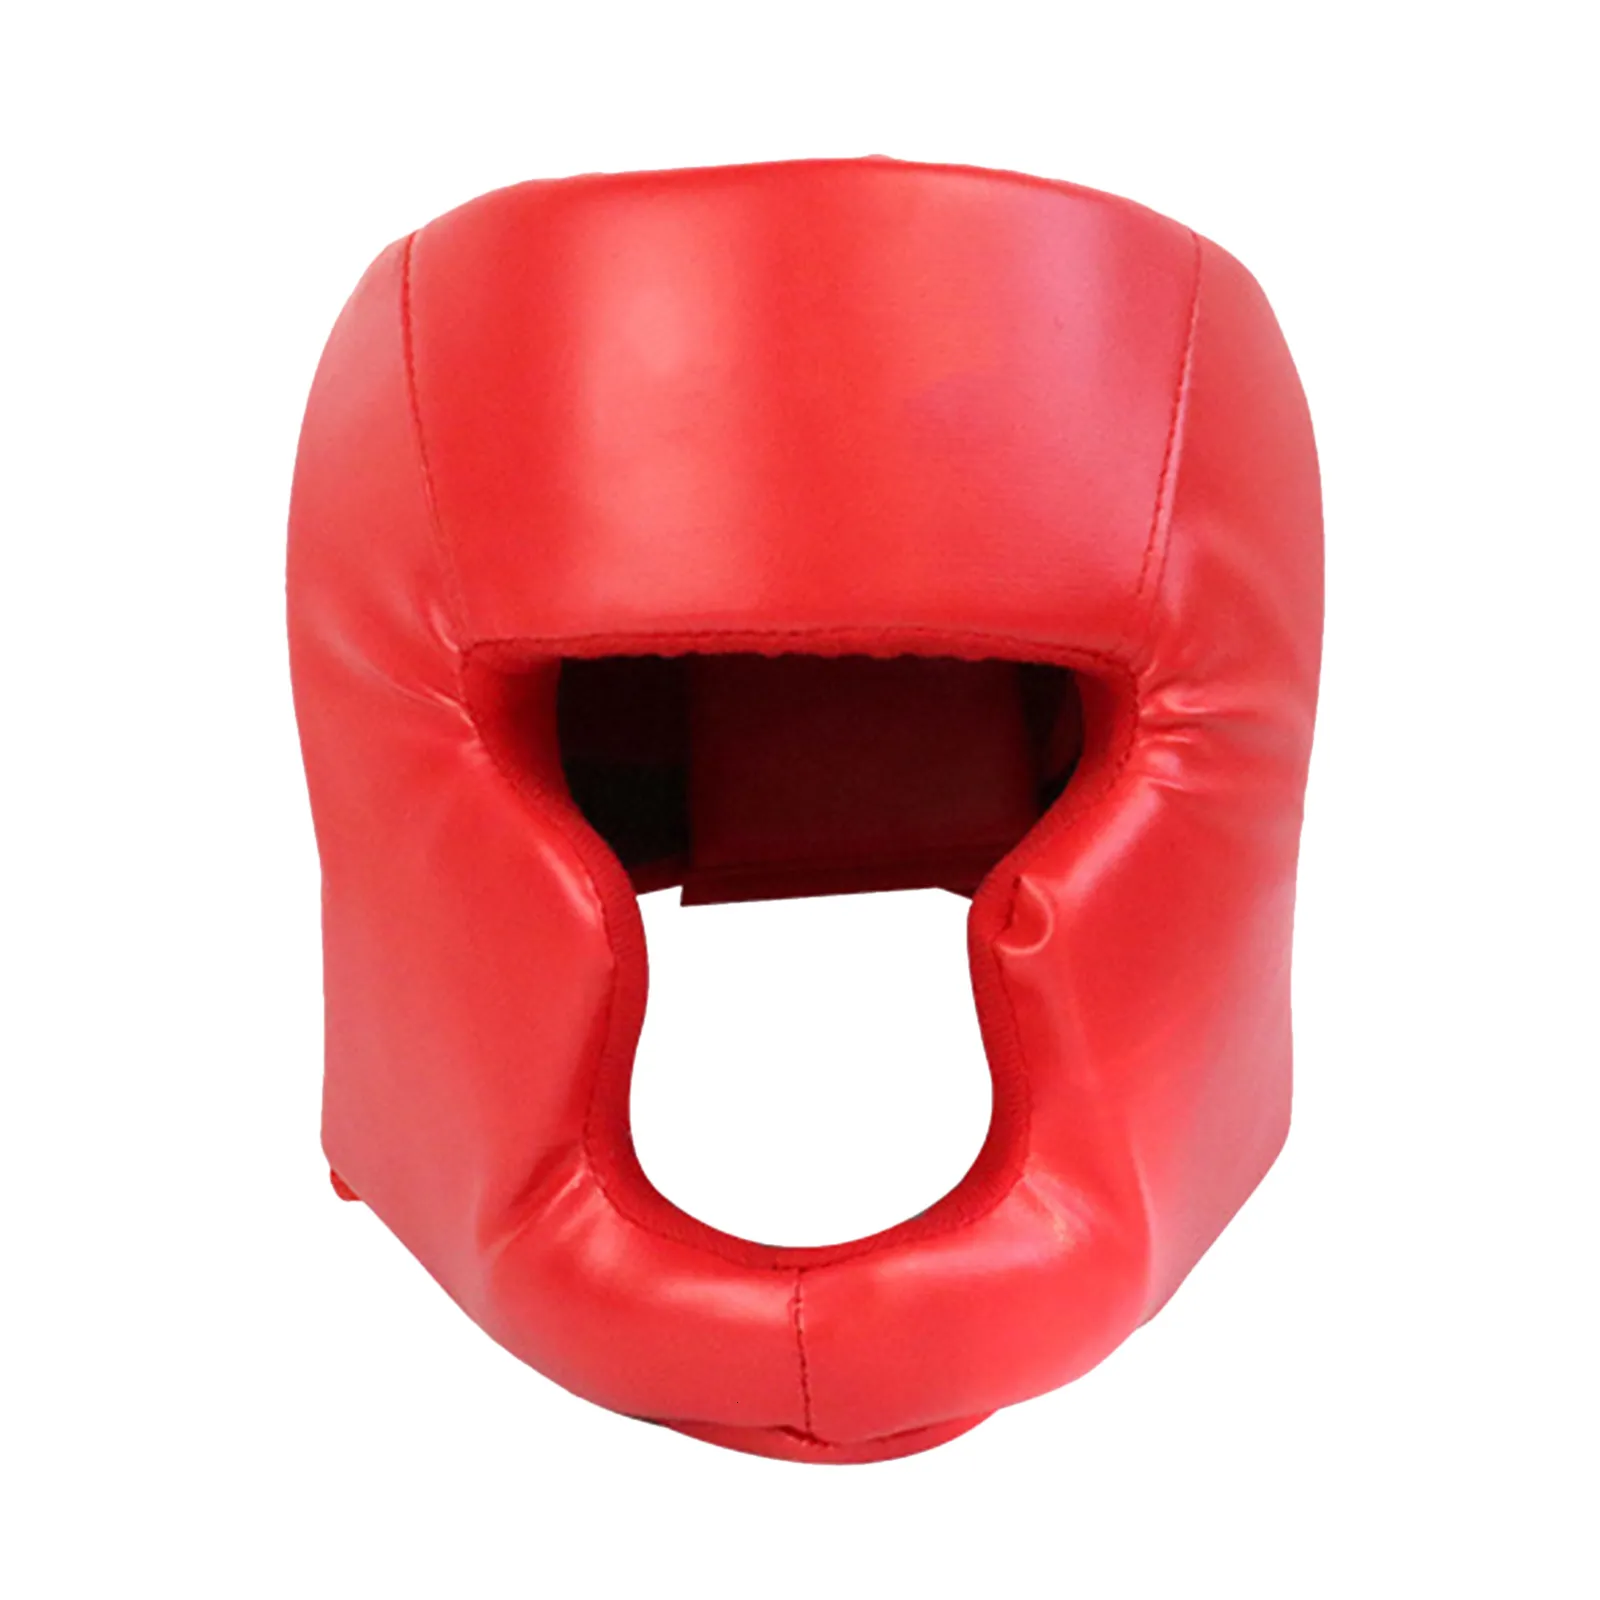 Équipement de protection Promotion Boxe MMA Casque de sécurité Protecteurs d'équipement de tête Adulte Enfant Formation Couvre-chef Muay Thai Kickboxing Casques entièrement couverts 230617